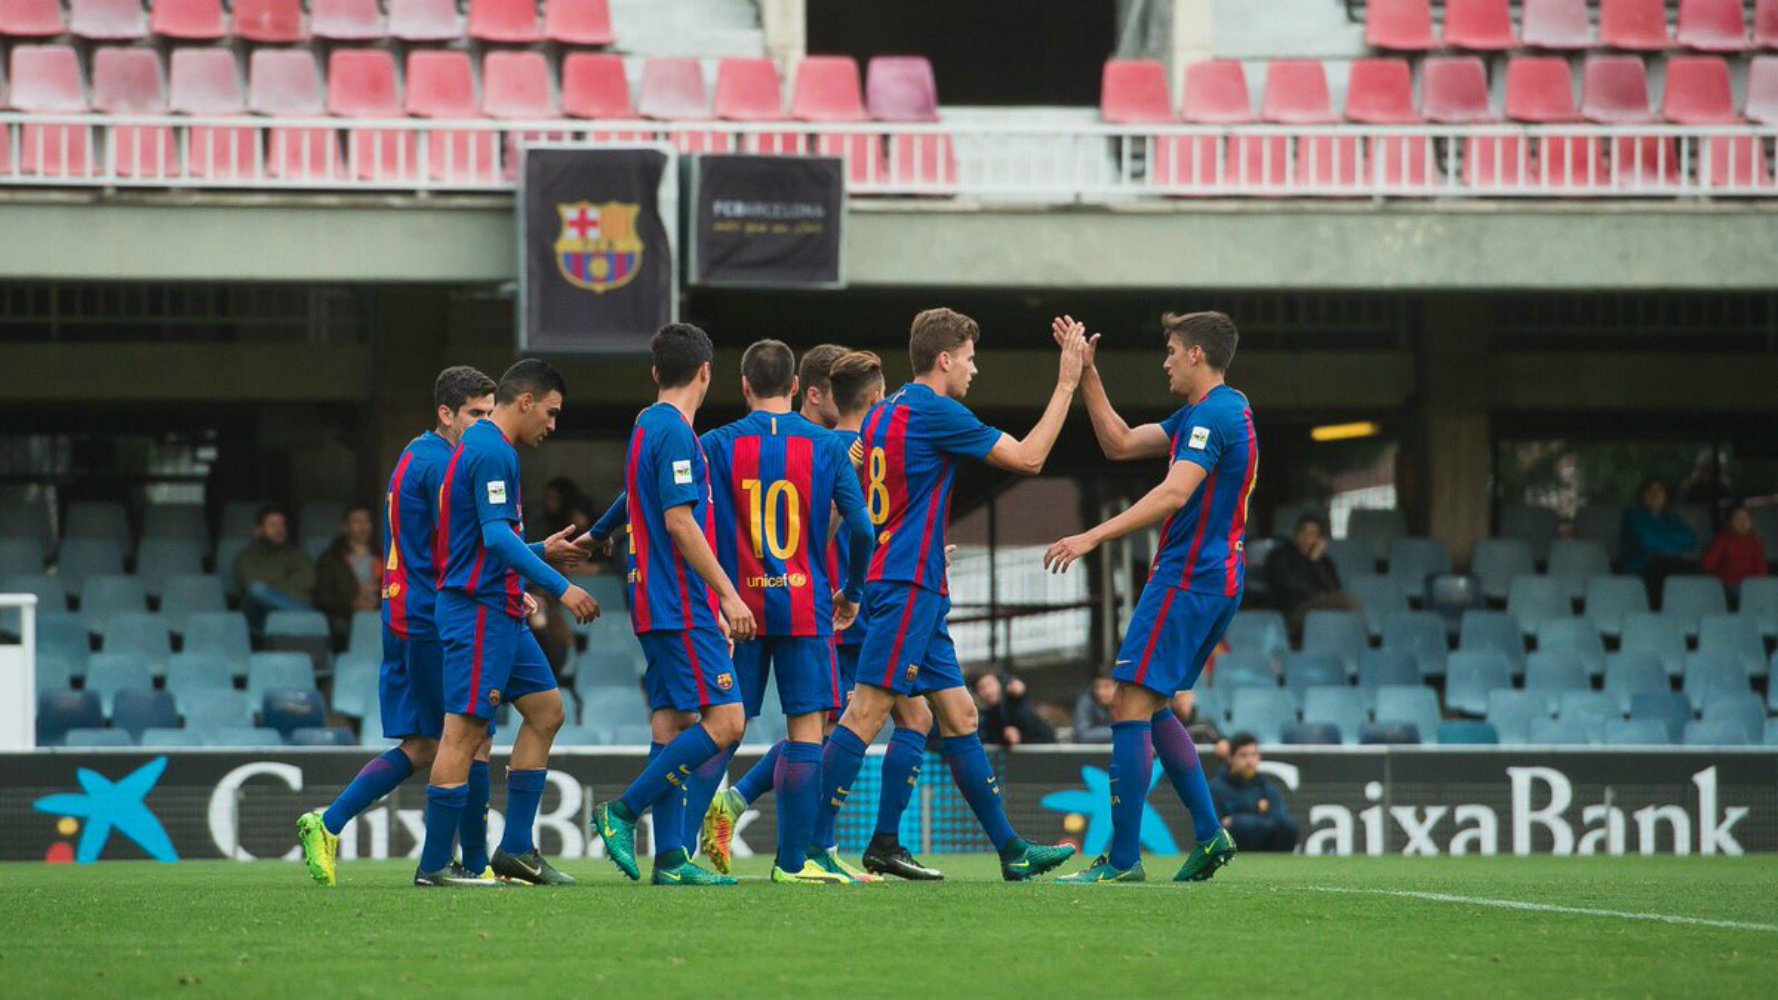 Golejada històrica del filial del Barça a l'Eldenc (12-0)